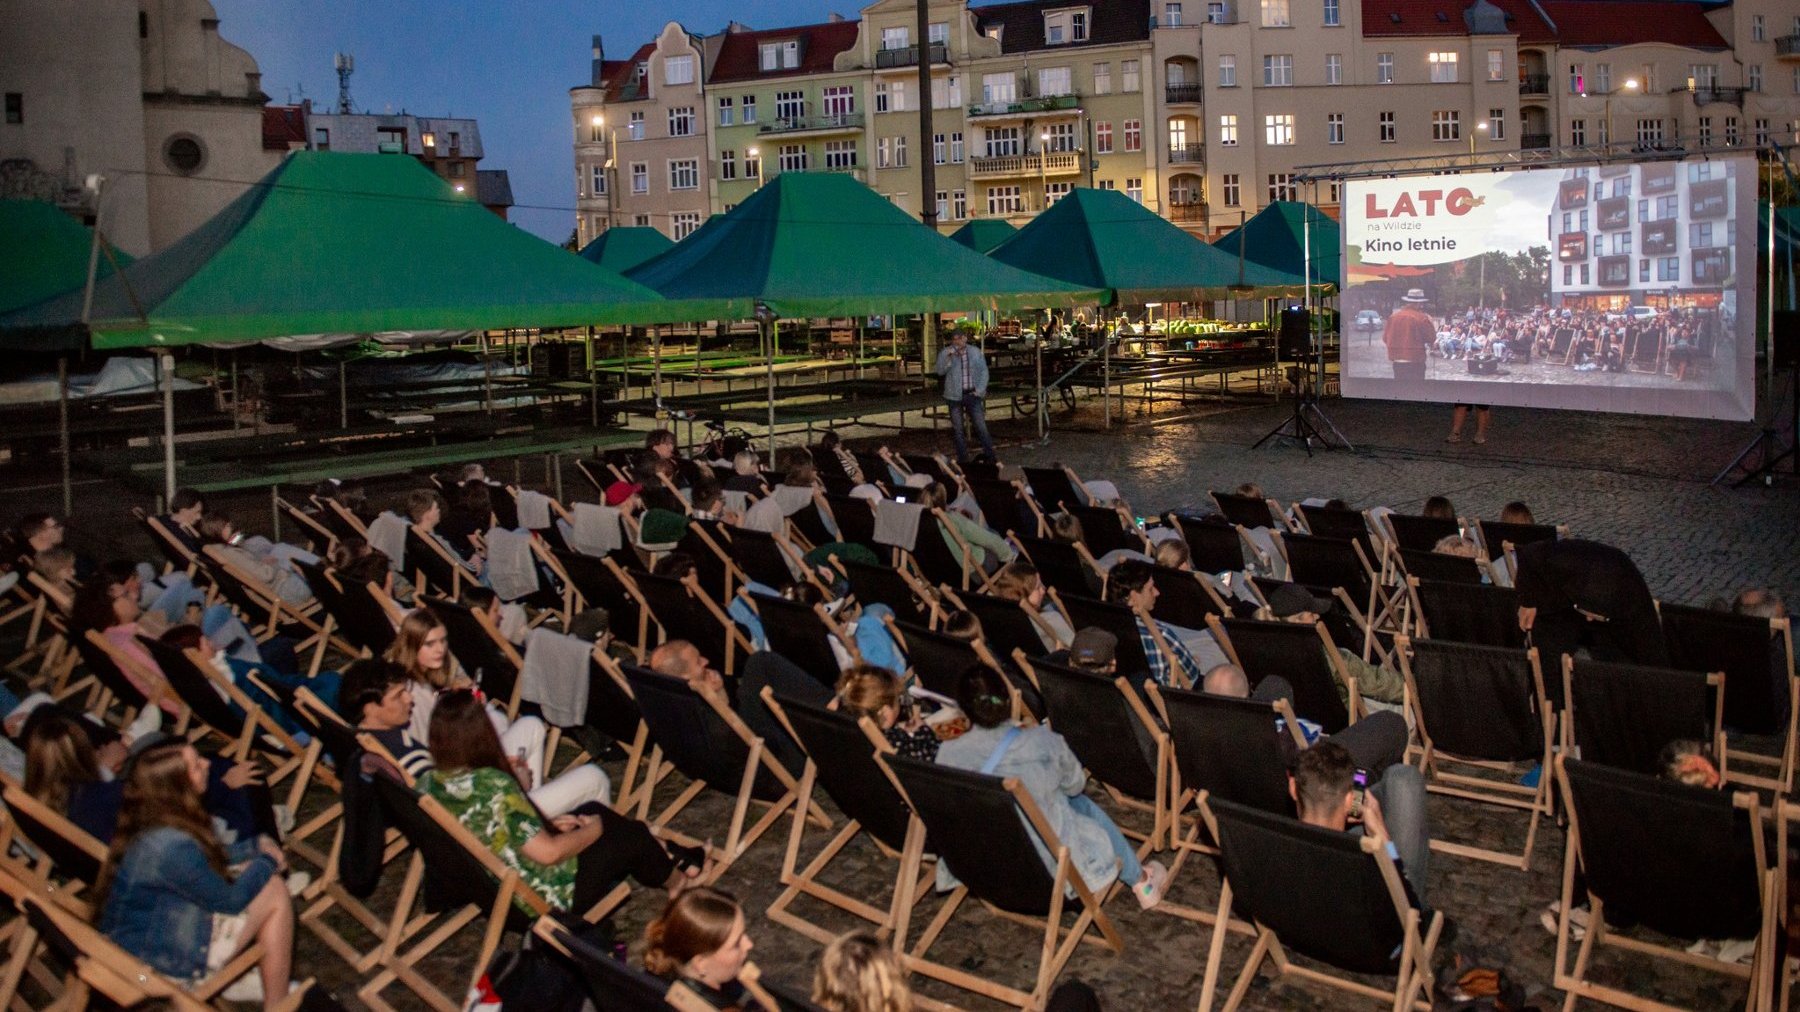 Galeria zdjęć przedstawia ludzie siedzących na leżakach i oglądajacych film na dużym ekranie.